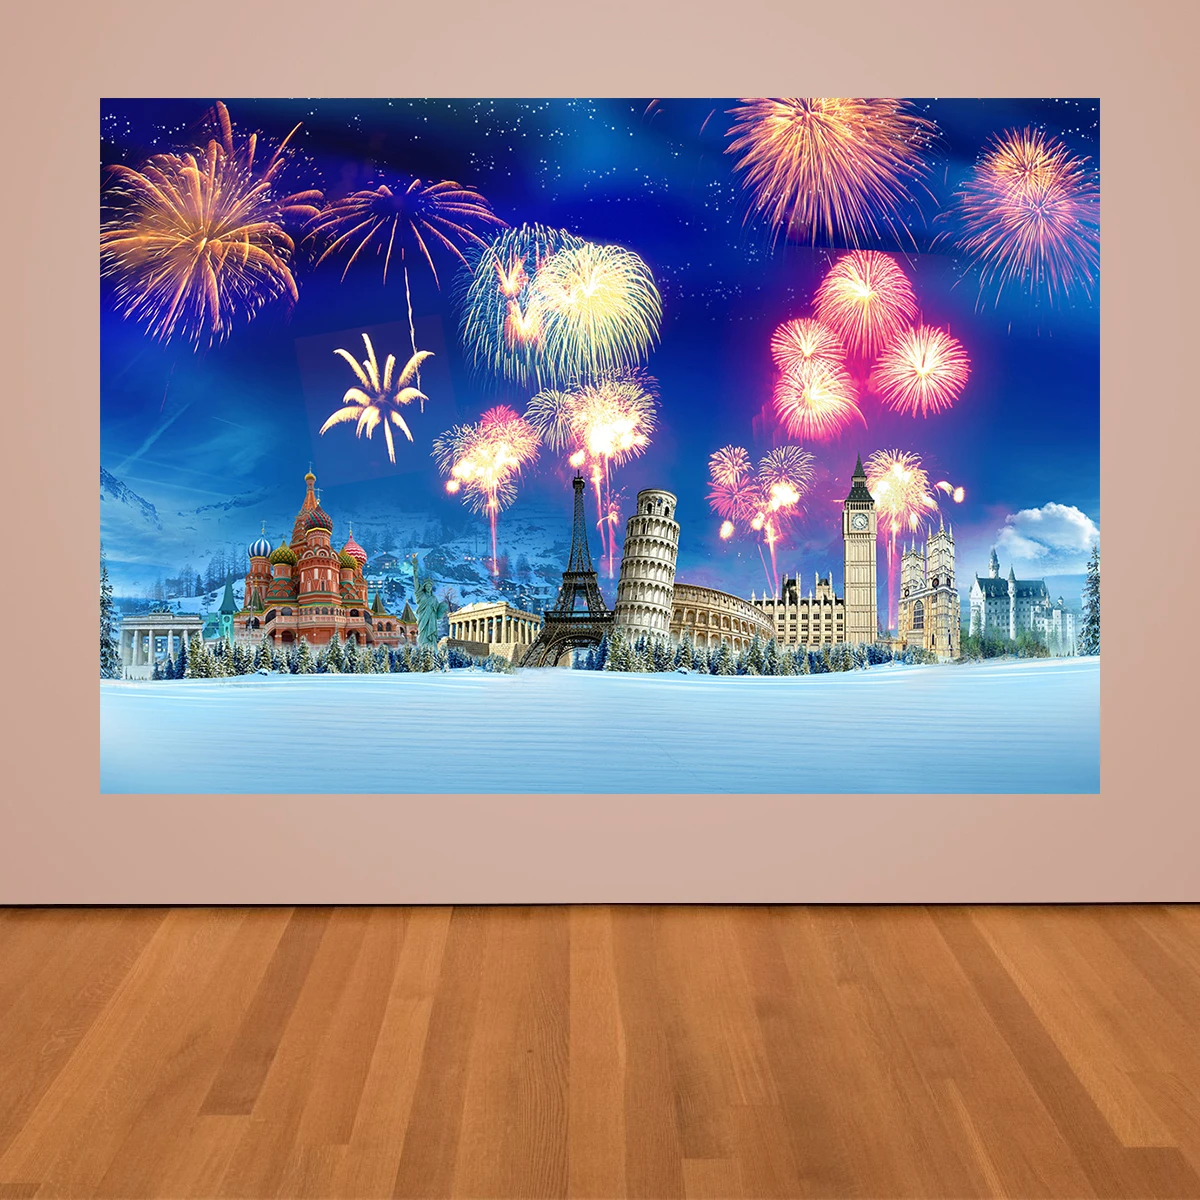 

Фон для фотосъемки с изображением знаменитой архитектуры с новым годом вечеринки фон баннер красивый фейерверк украшение плакат фото